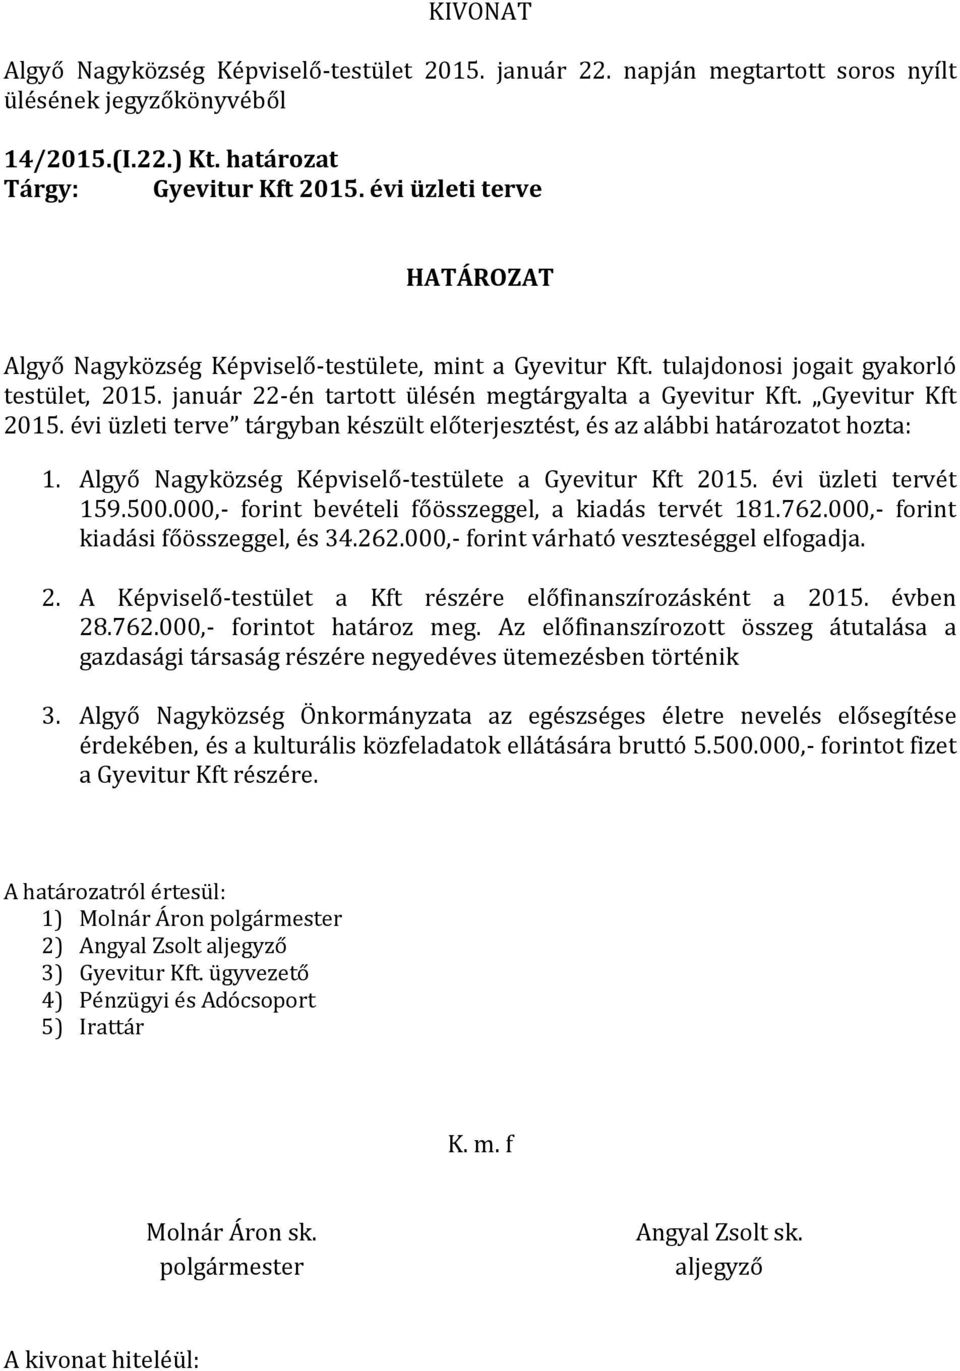 Algyő Nagyközség Képviselő-testülete a Gyevitur Kft 2015. évi üzleti tervét 159.500.000,- forint bevételi főösszeggel, a kiadás tervét 181.762.000,- forint kiadási főösszeggel, és 34.262.